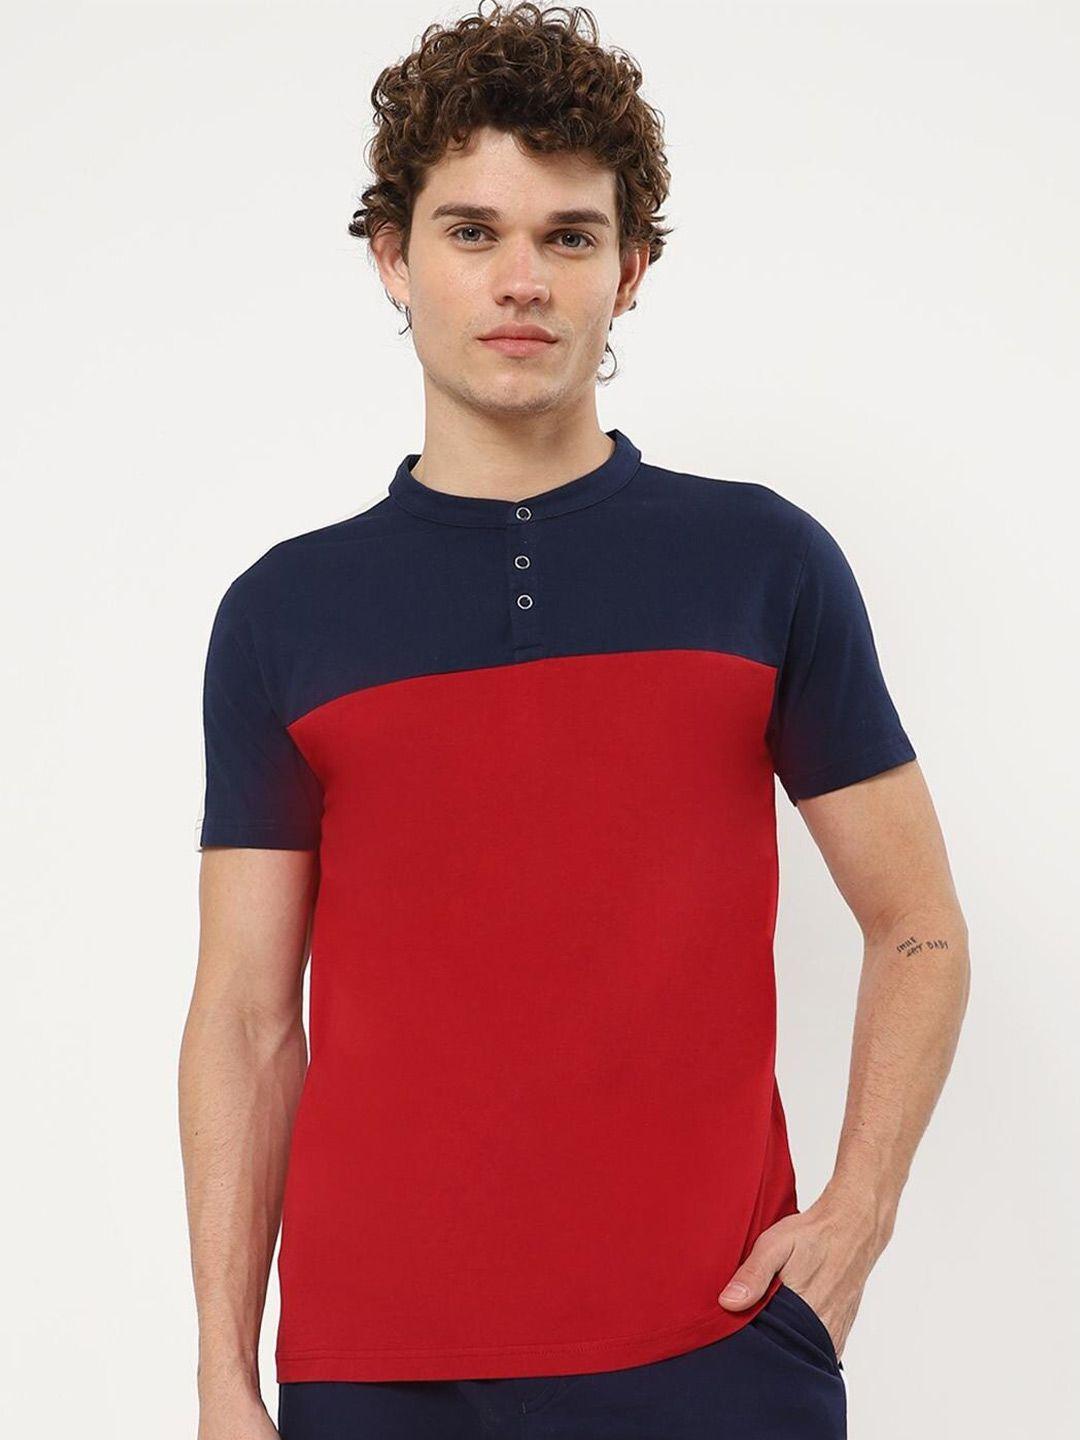 bewakoof men red & navy blue colourblocked henley neck pure cotton t-shirt